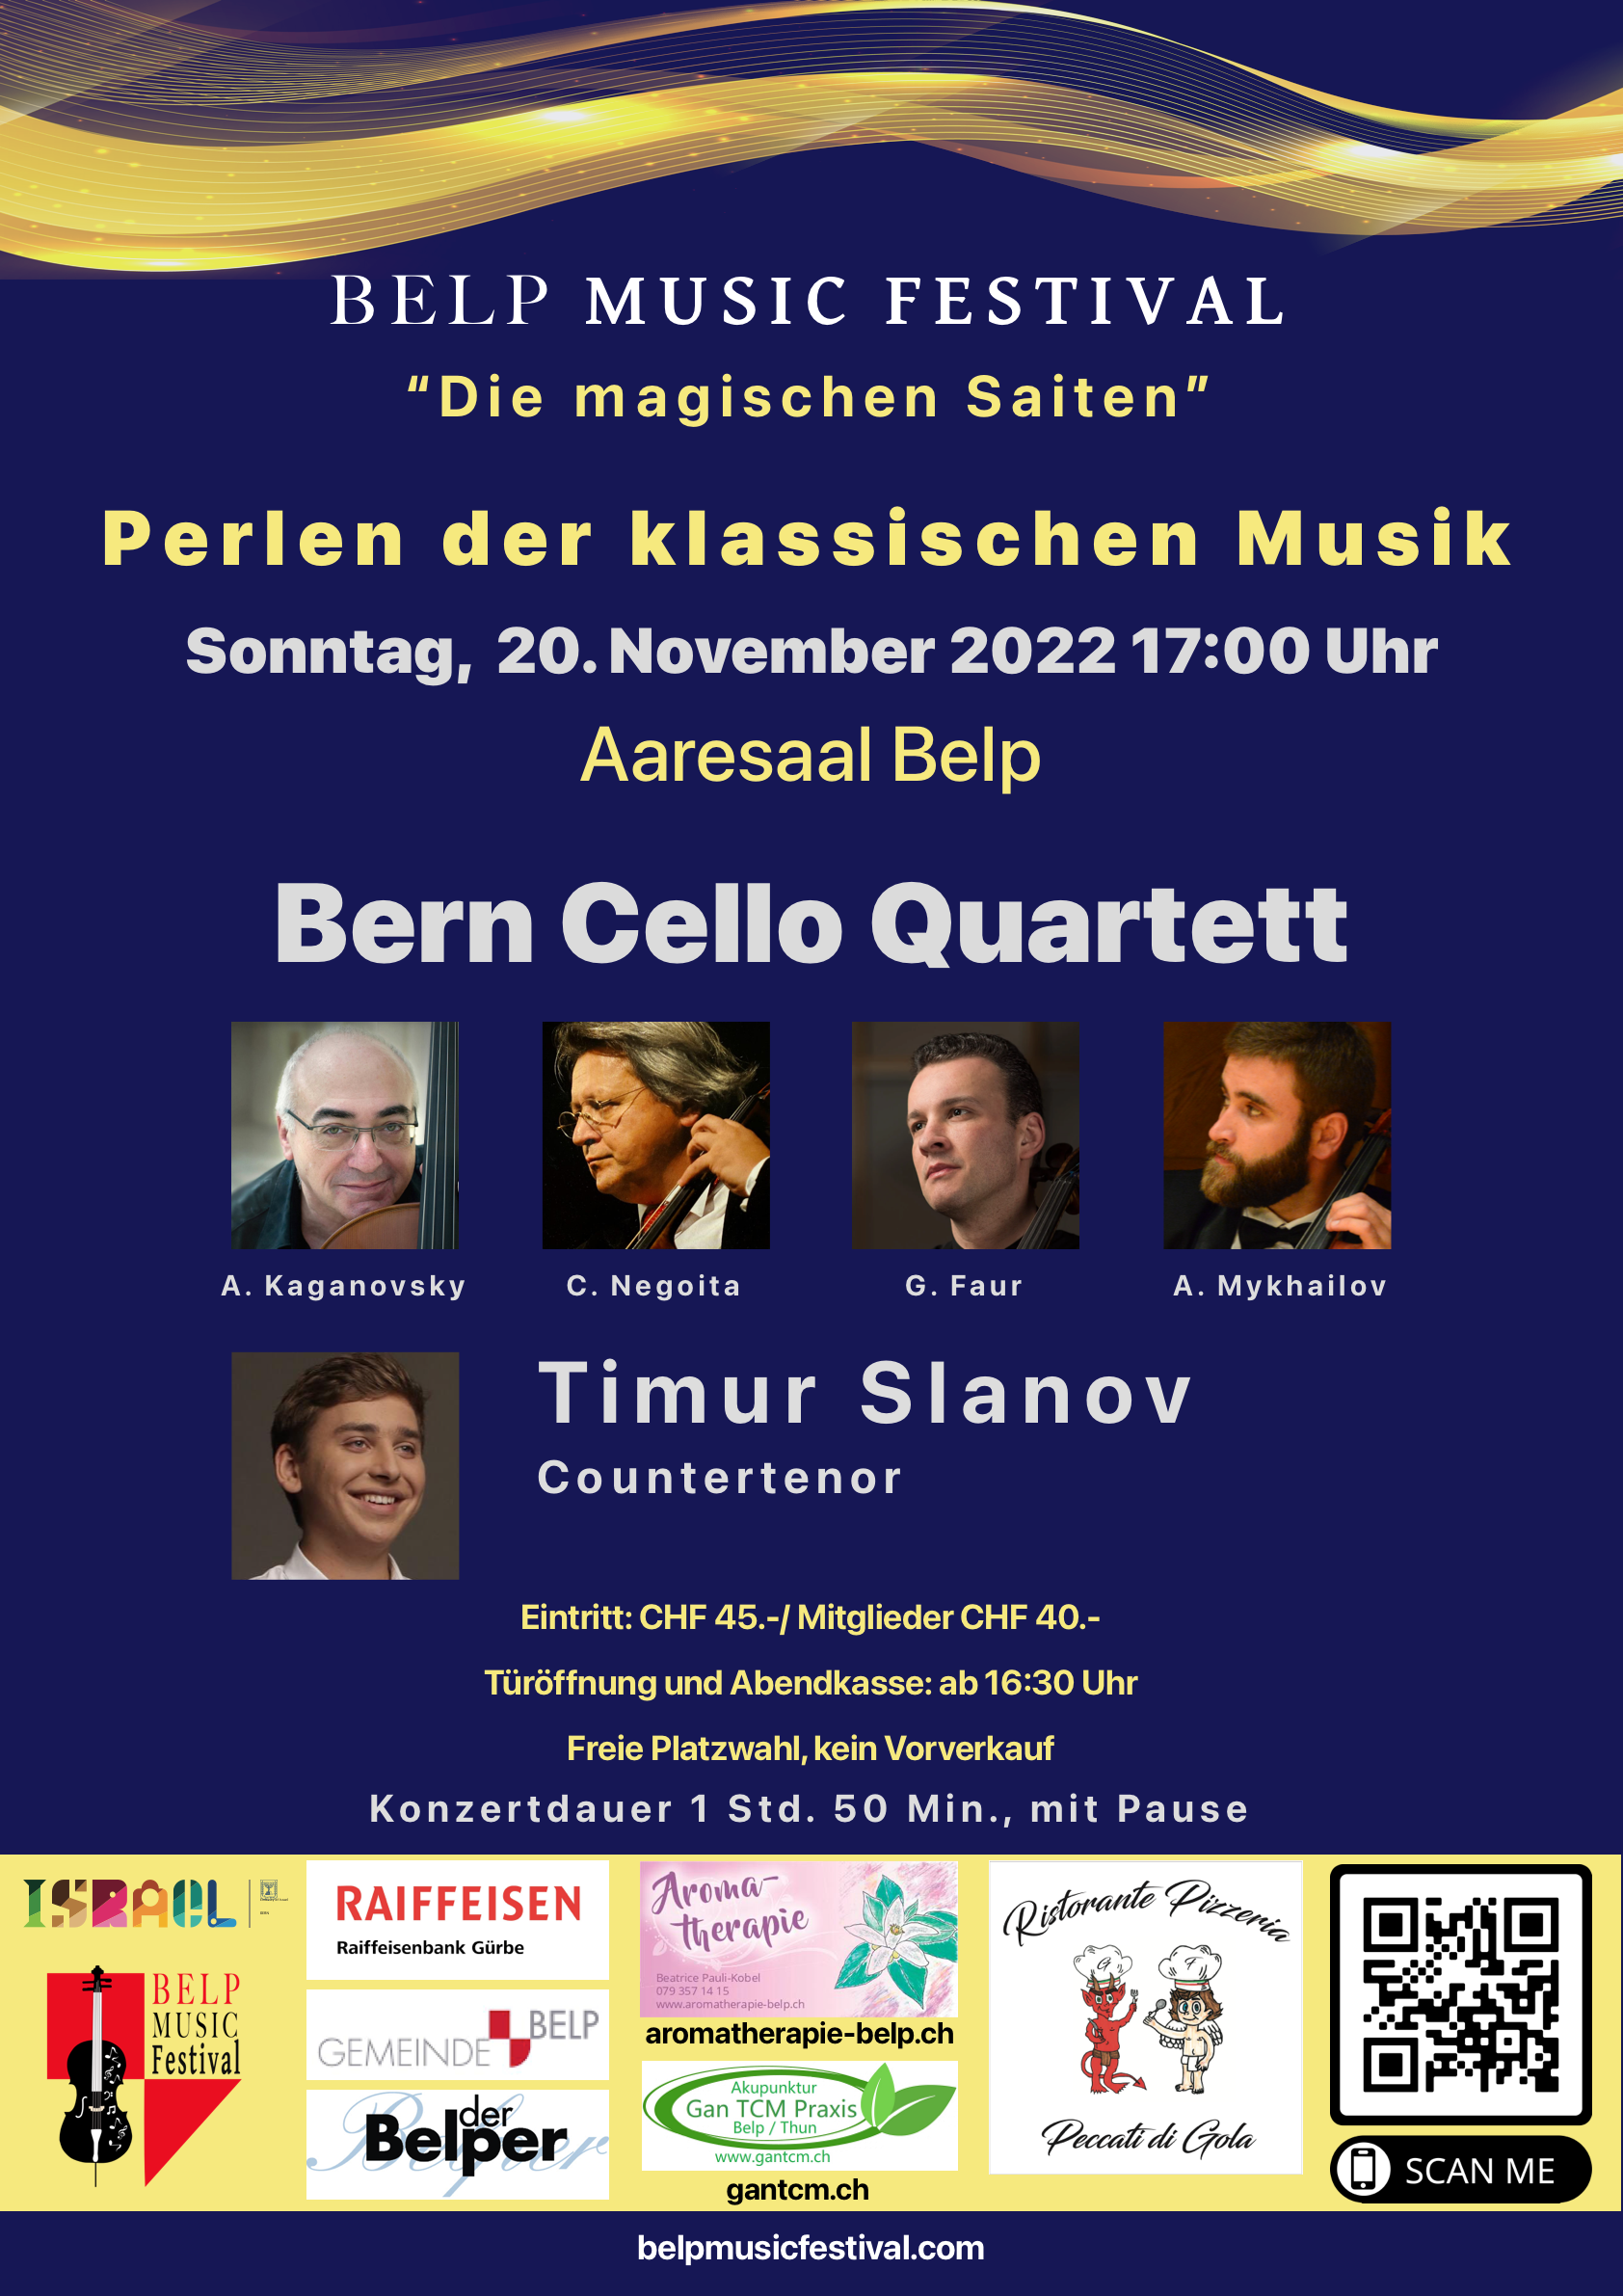 Bern Cello Quartett